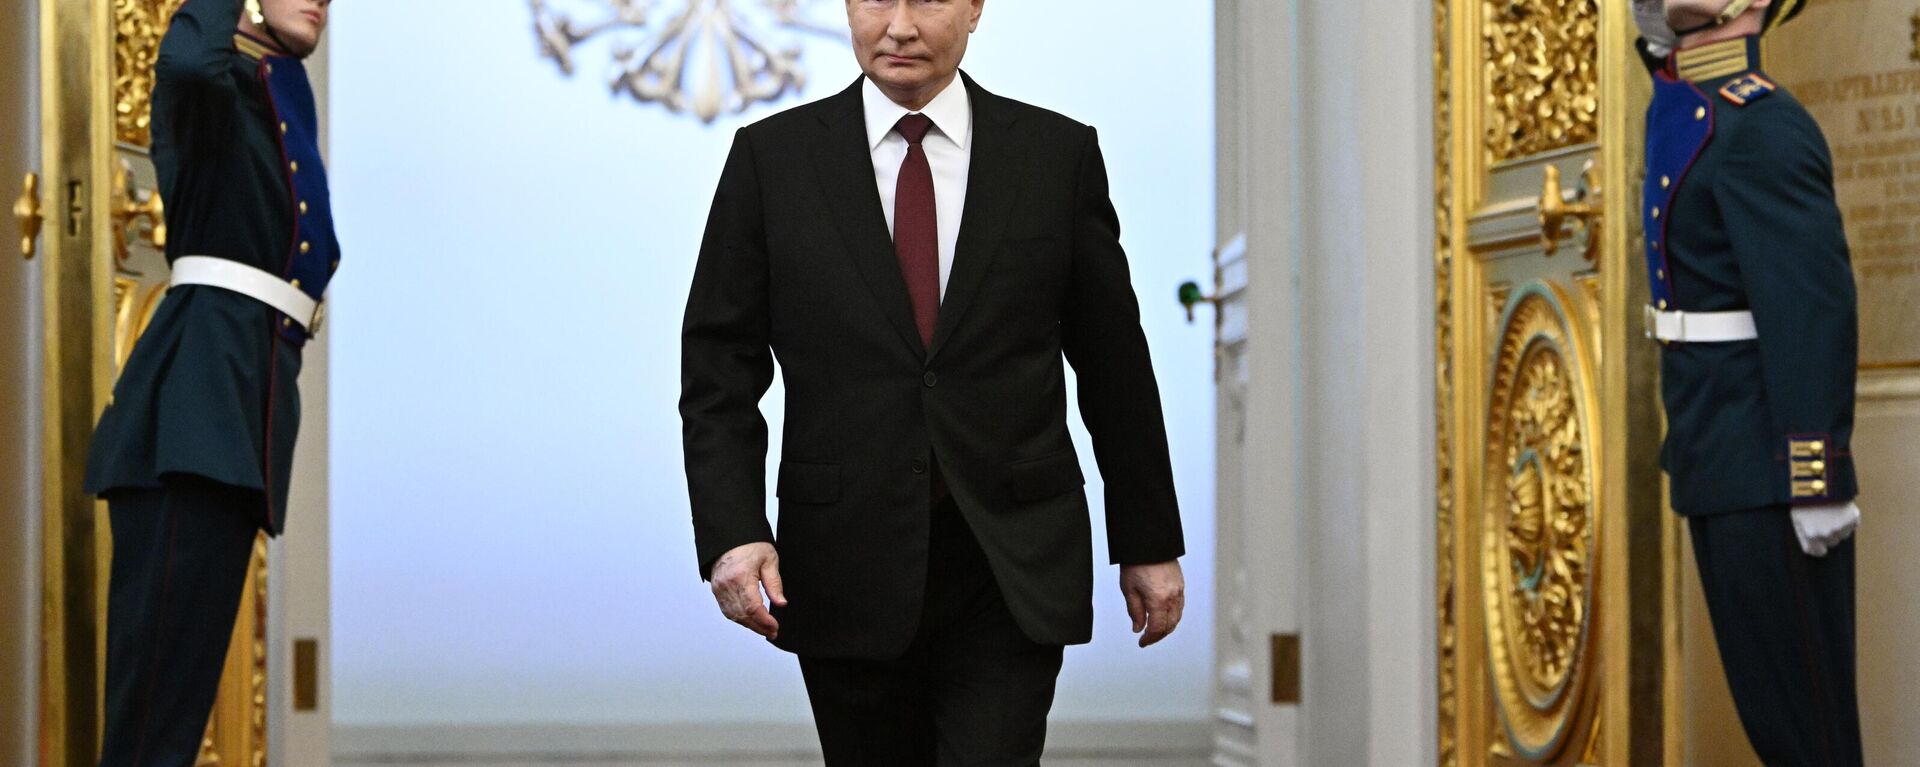 Vladímir Putin asume la Presidencia de Rusia - Sputnik Mundo, 1920, 07.05.2024